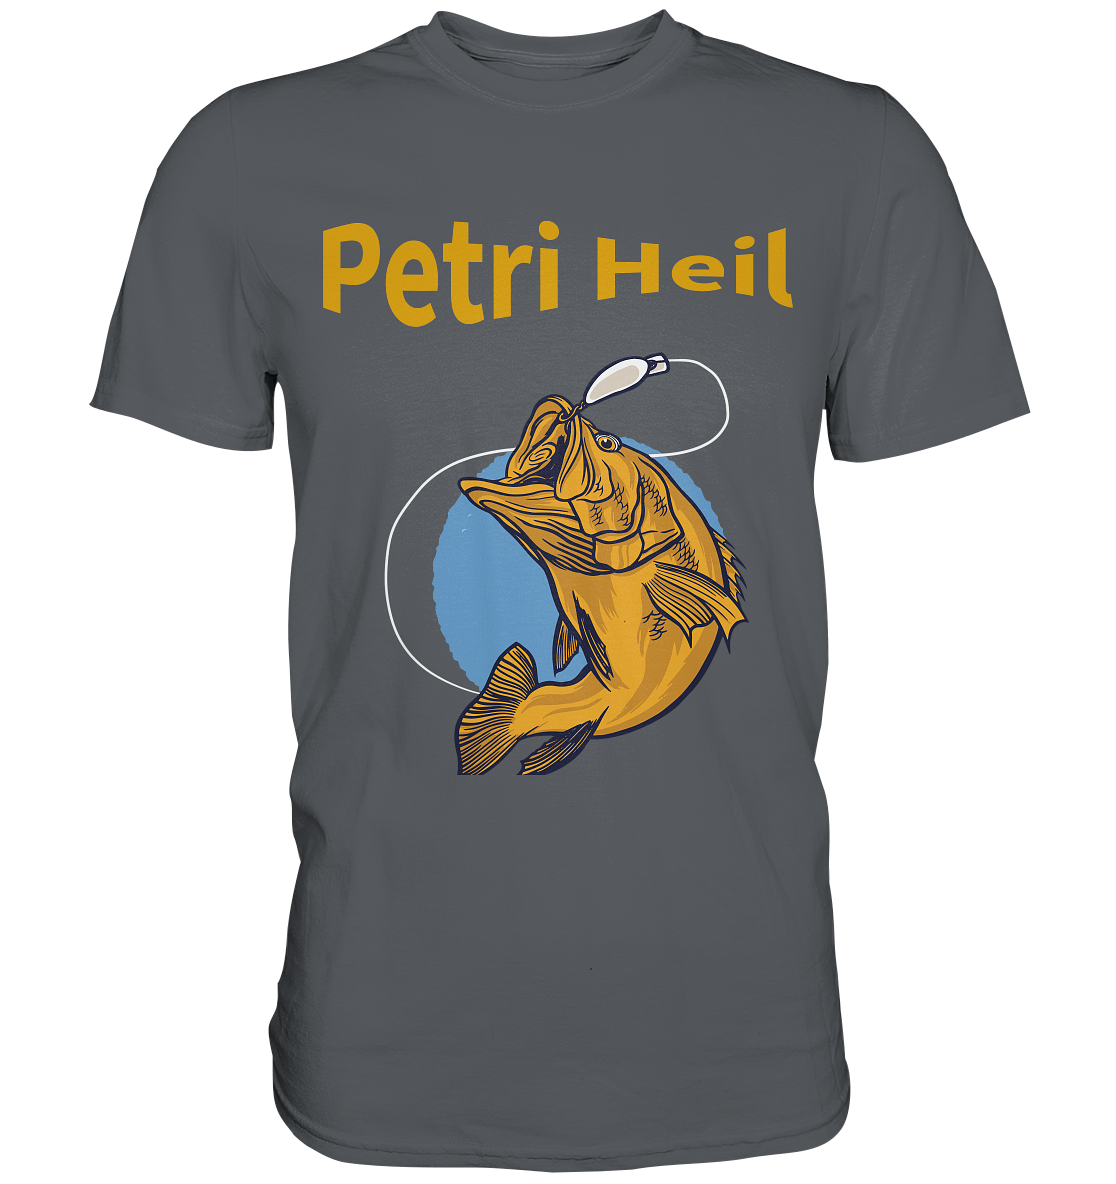 Petri-Heil - Premium Shirt - Online Kaufhaus München